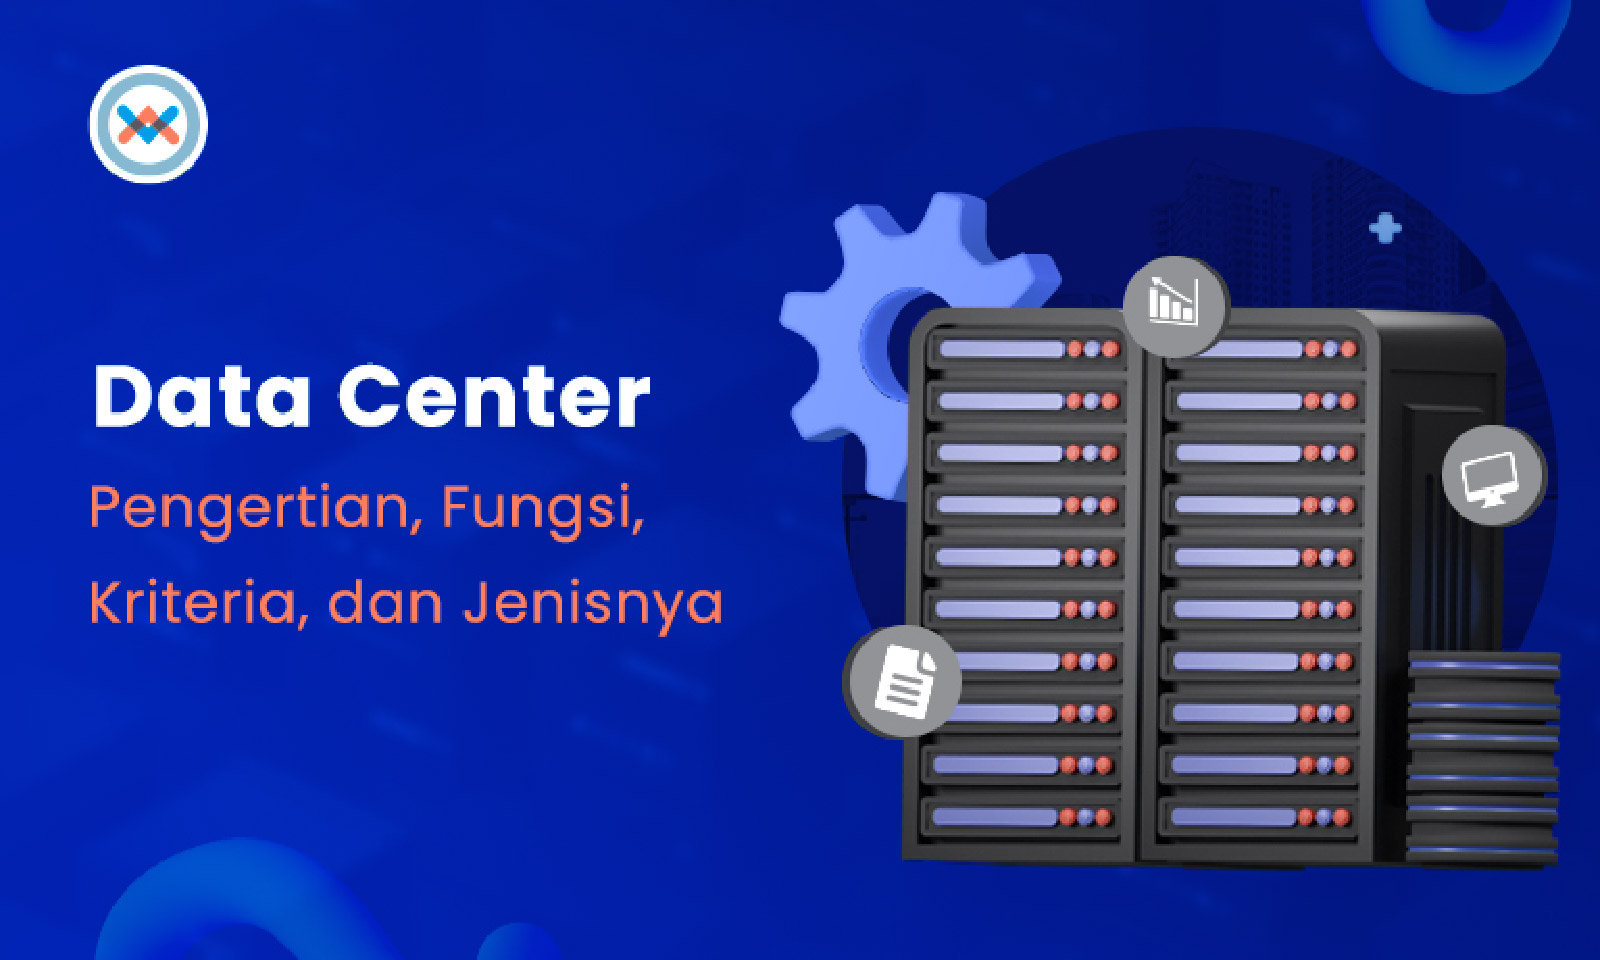 Mengenal Data Center: Pengertian, Fungsi, Kriteria, dan Jenisnya